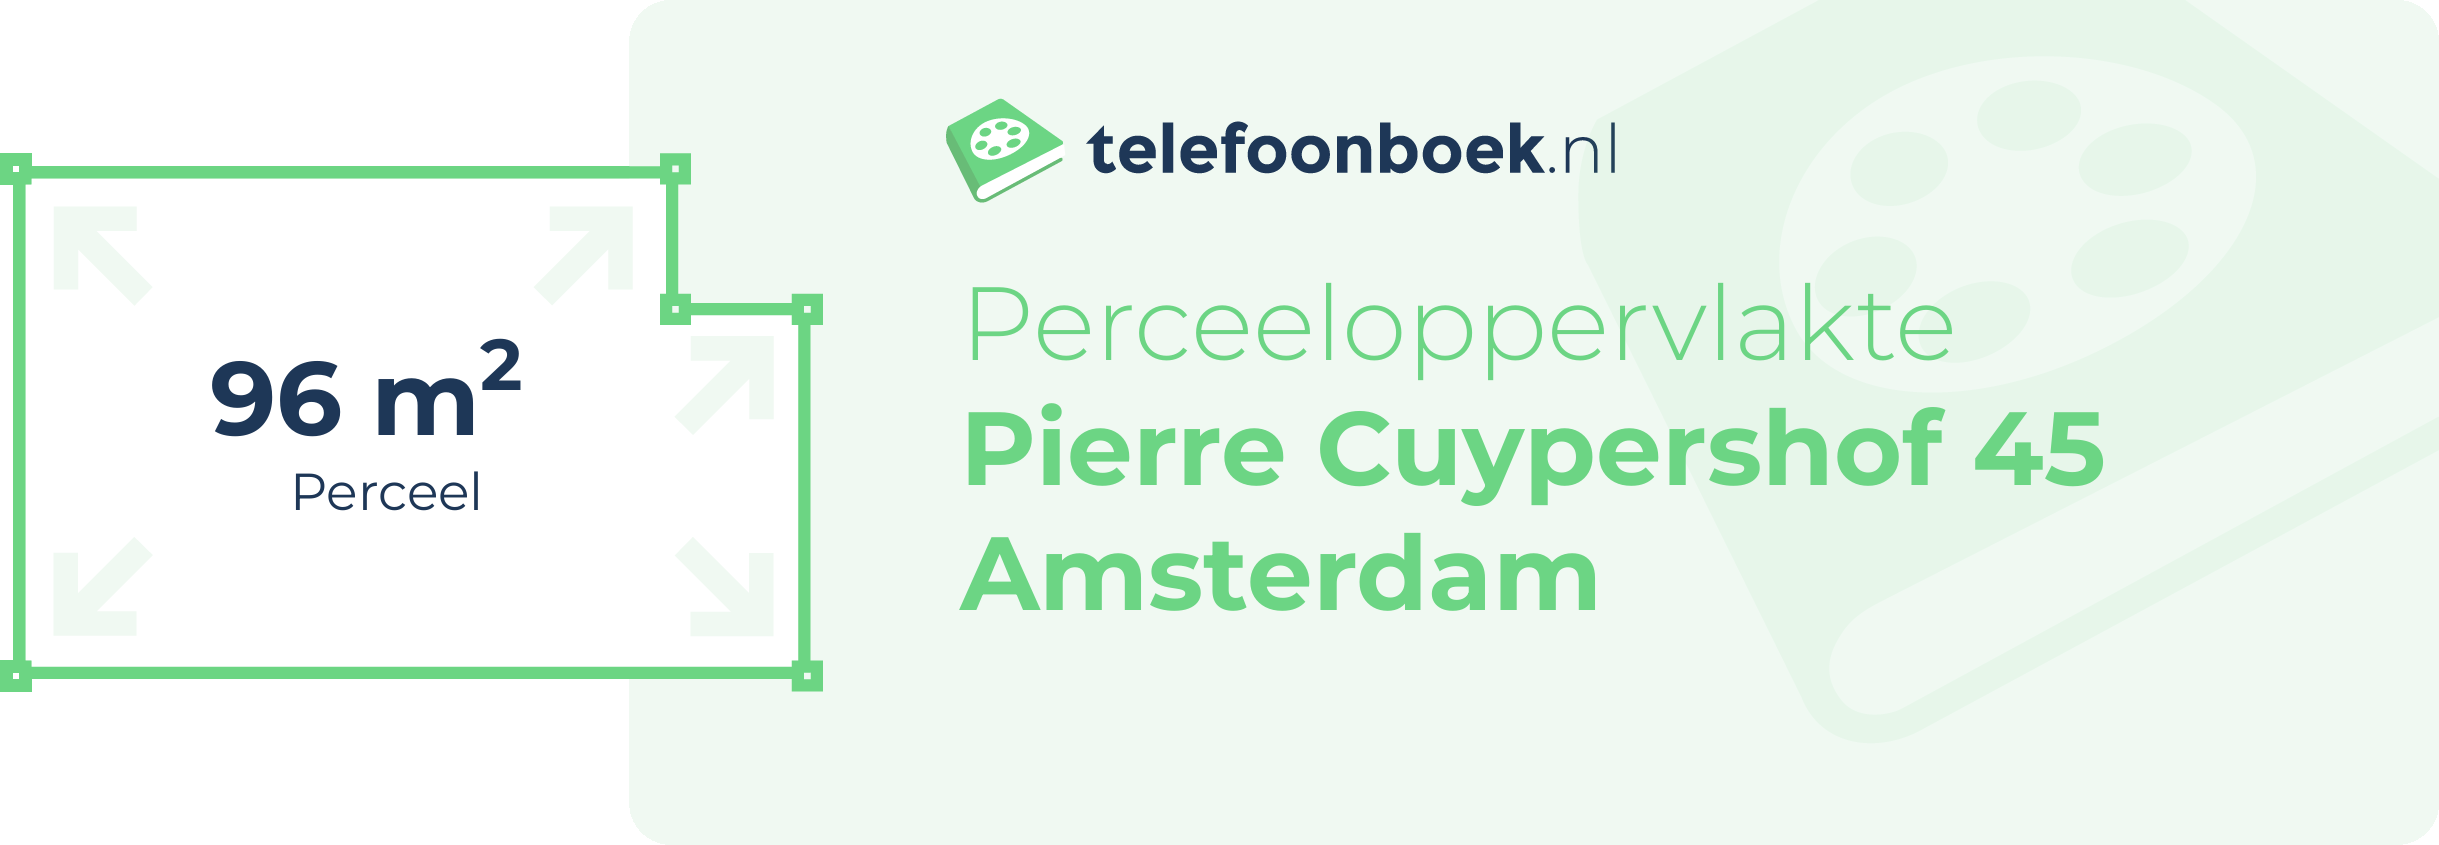 Perceeloppervlakte Pierre Cuypershof 45 Amsterdam